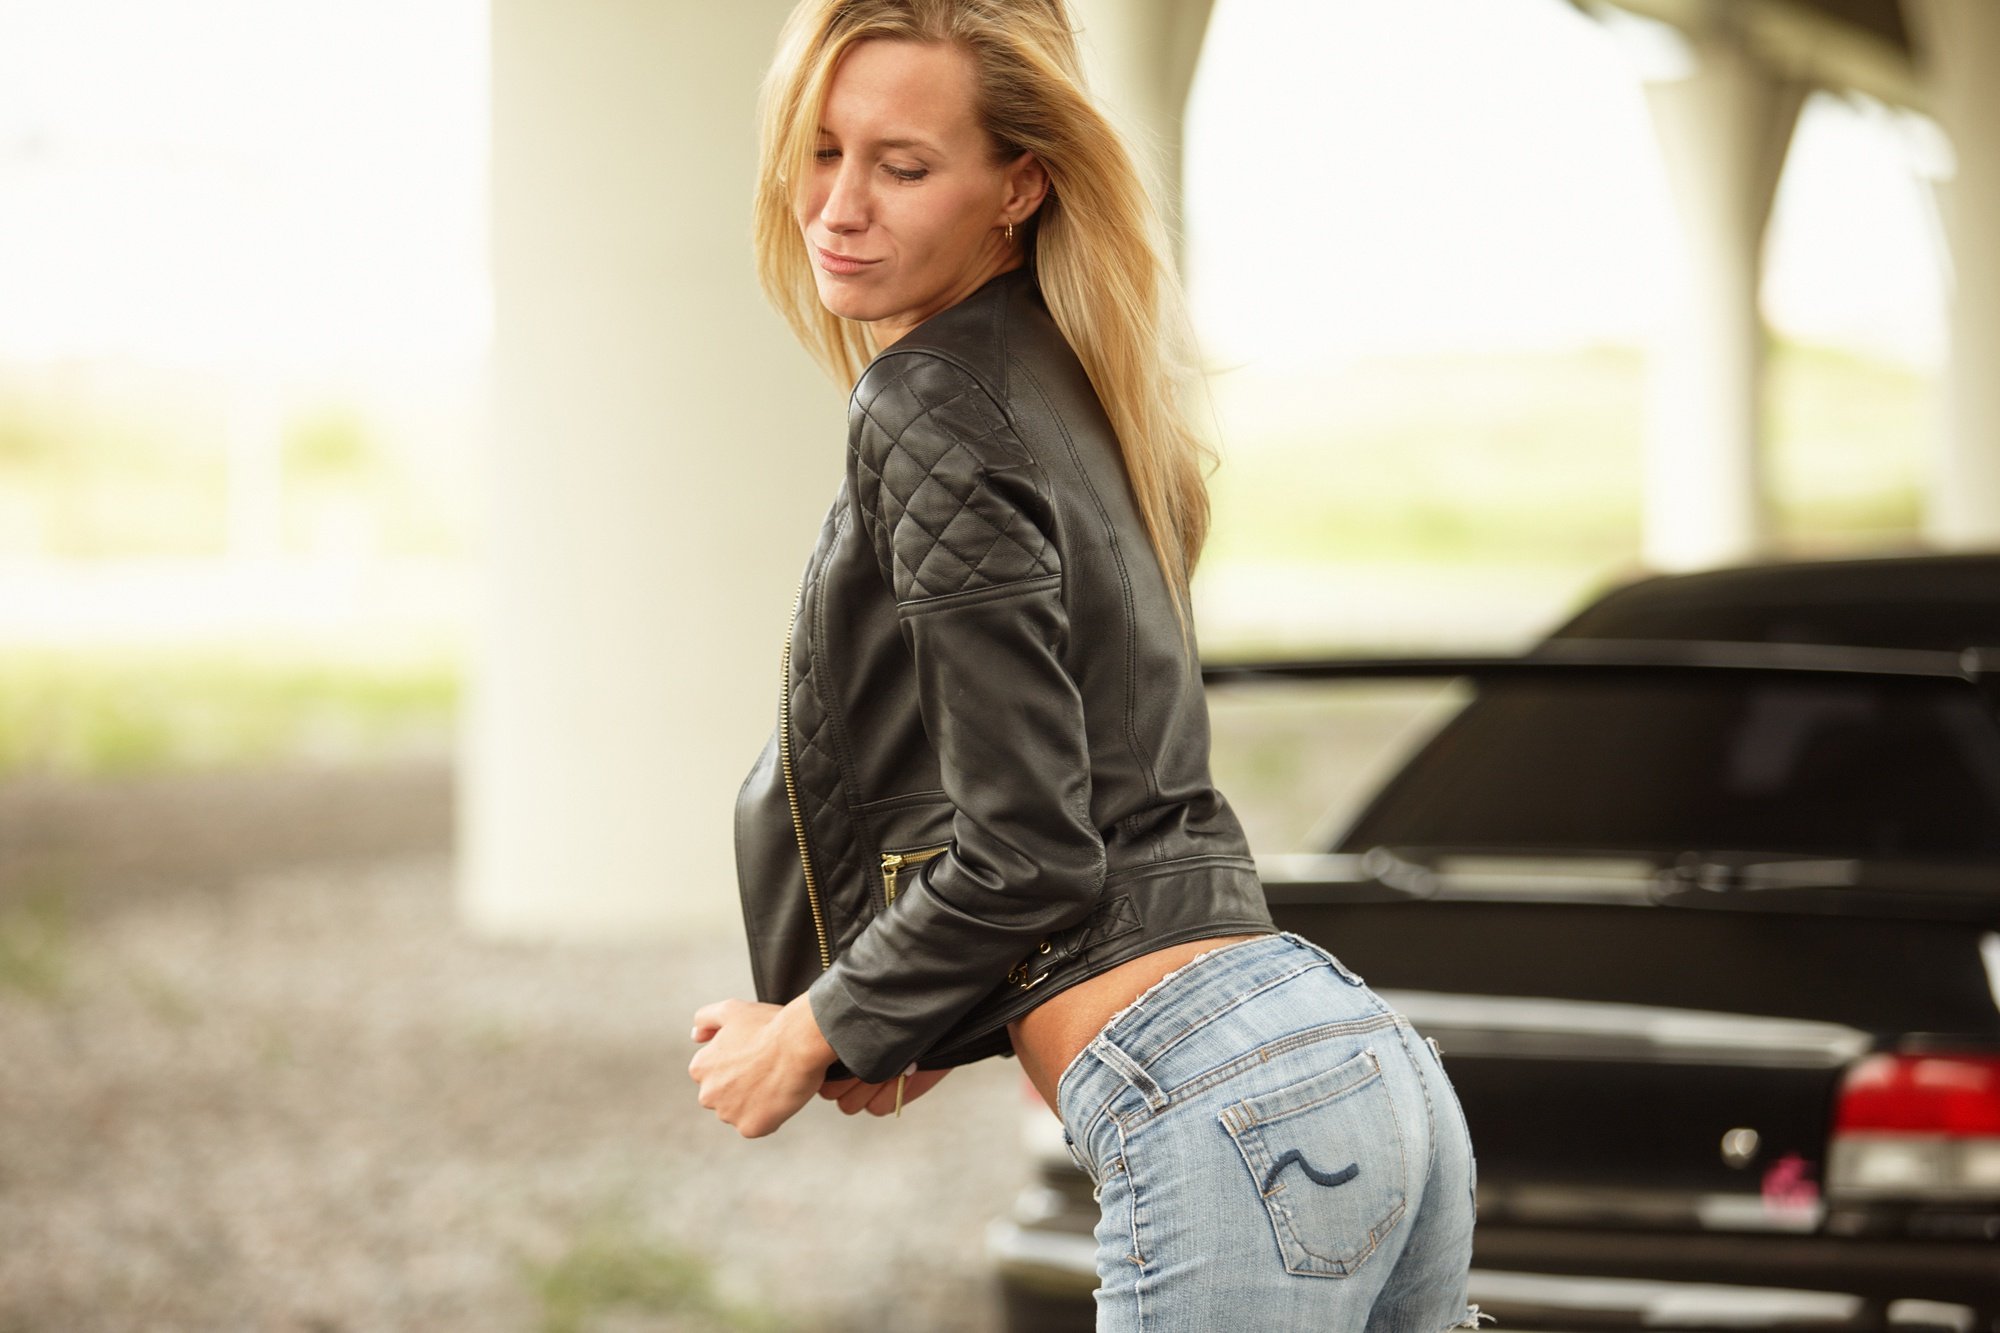 Стройная блондинка снимает с себя джинсы 20 фотографий